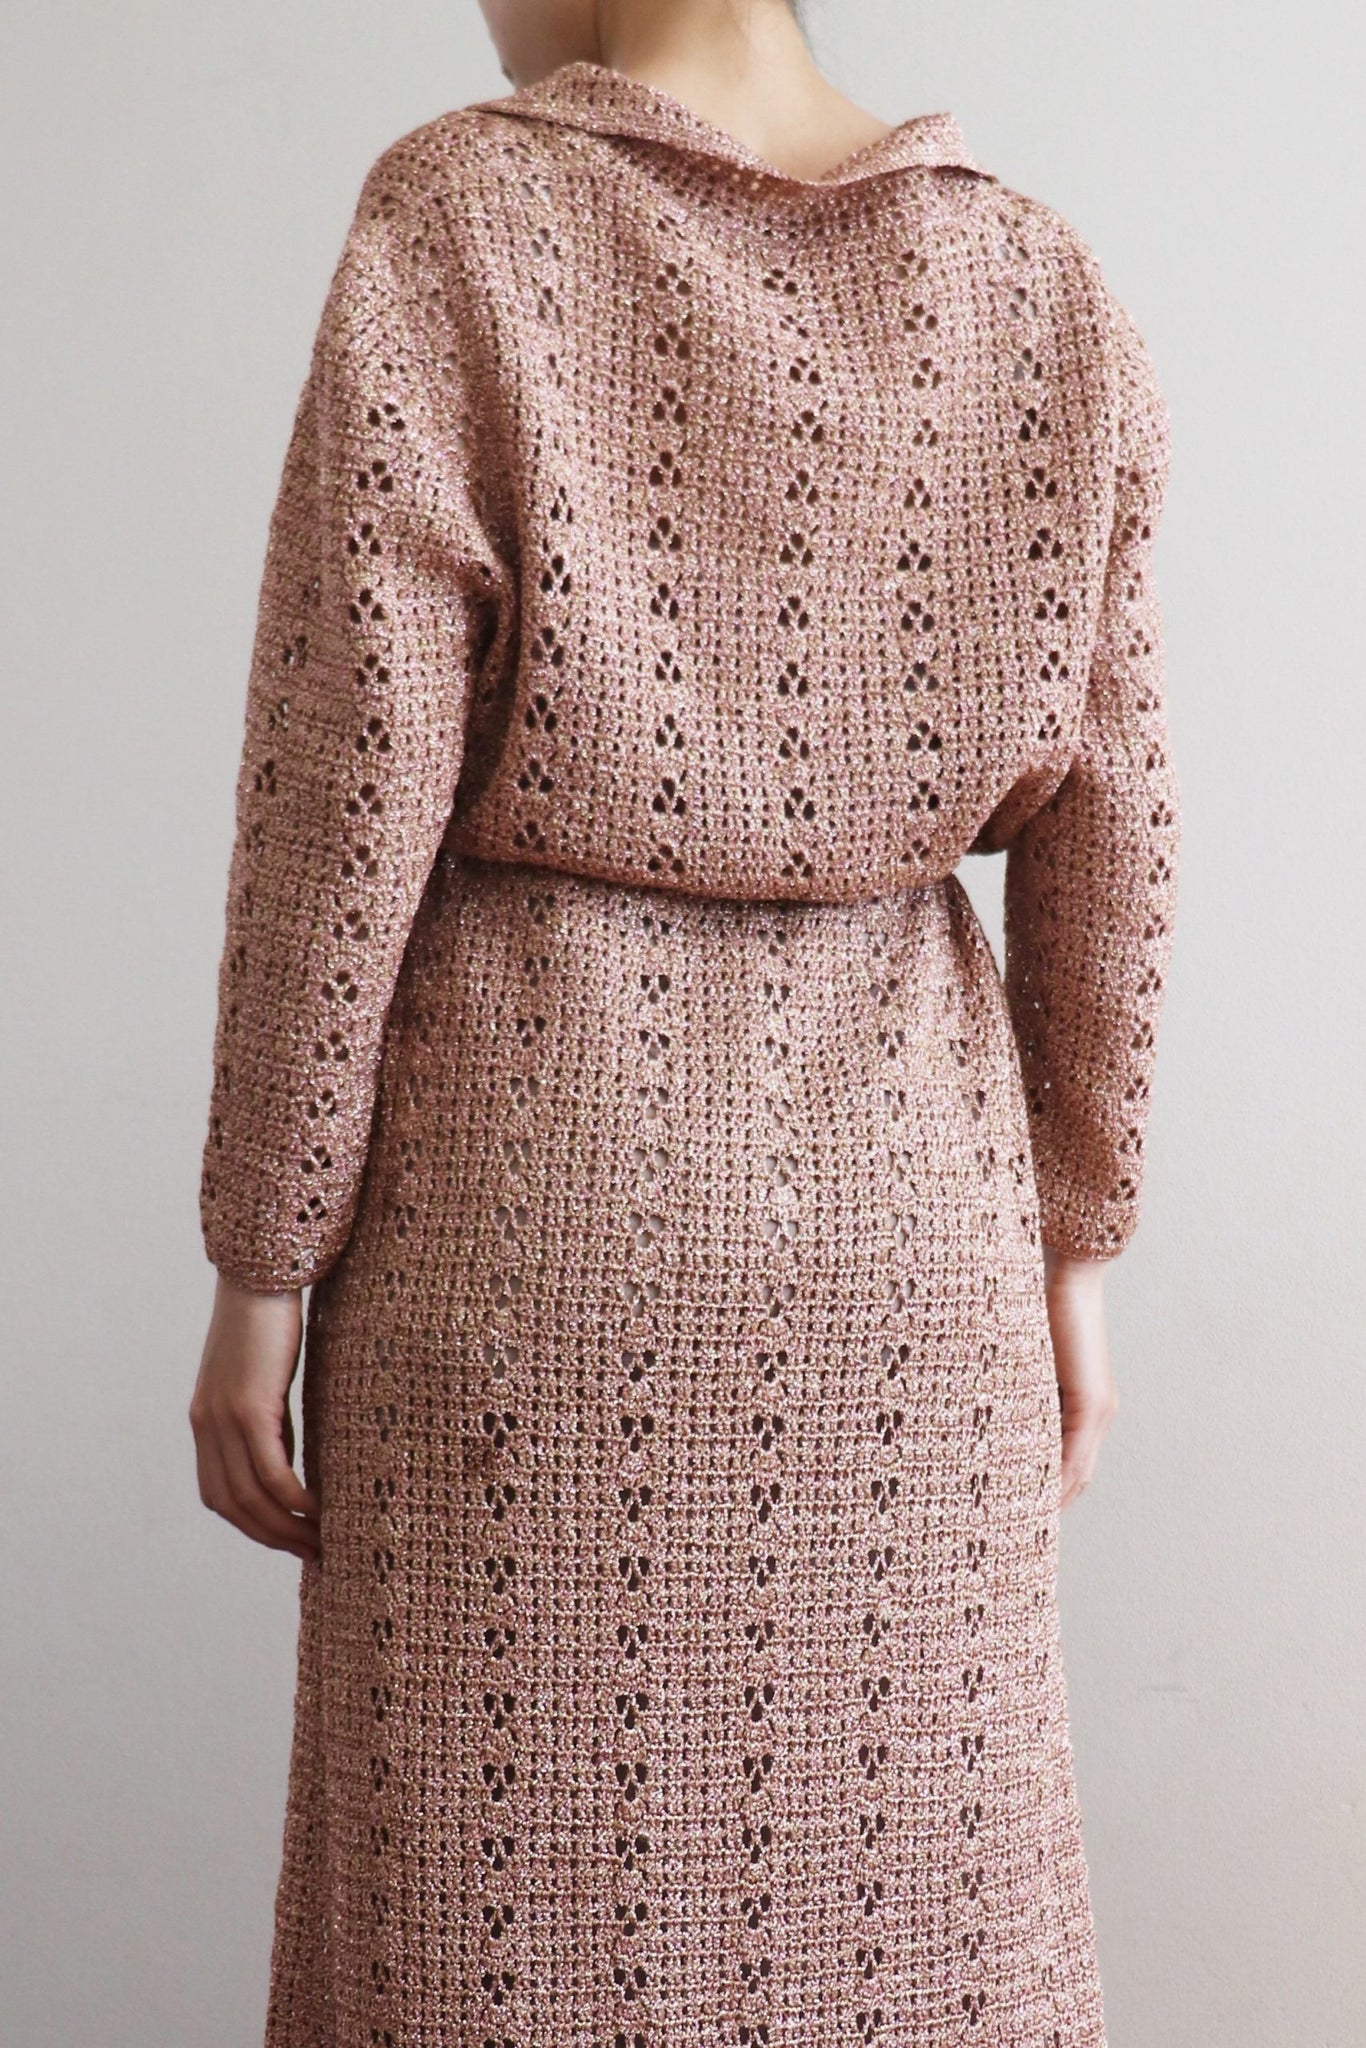 70s Rose Gold Lurex Handmade Crochet Maxi Dress